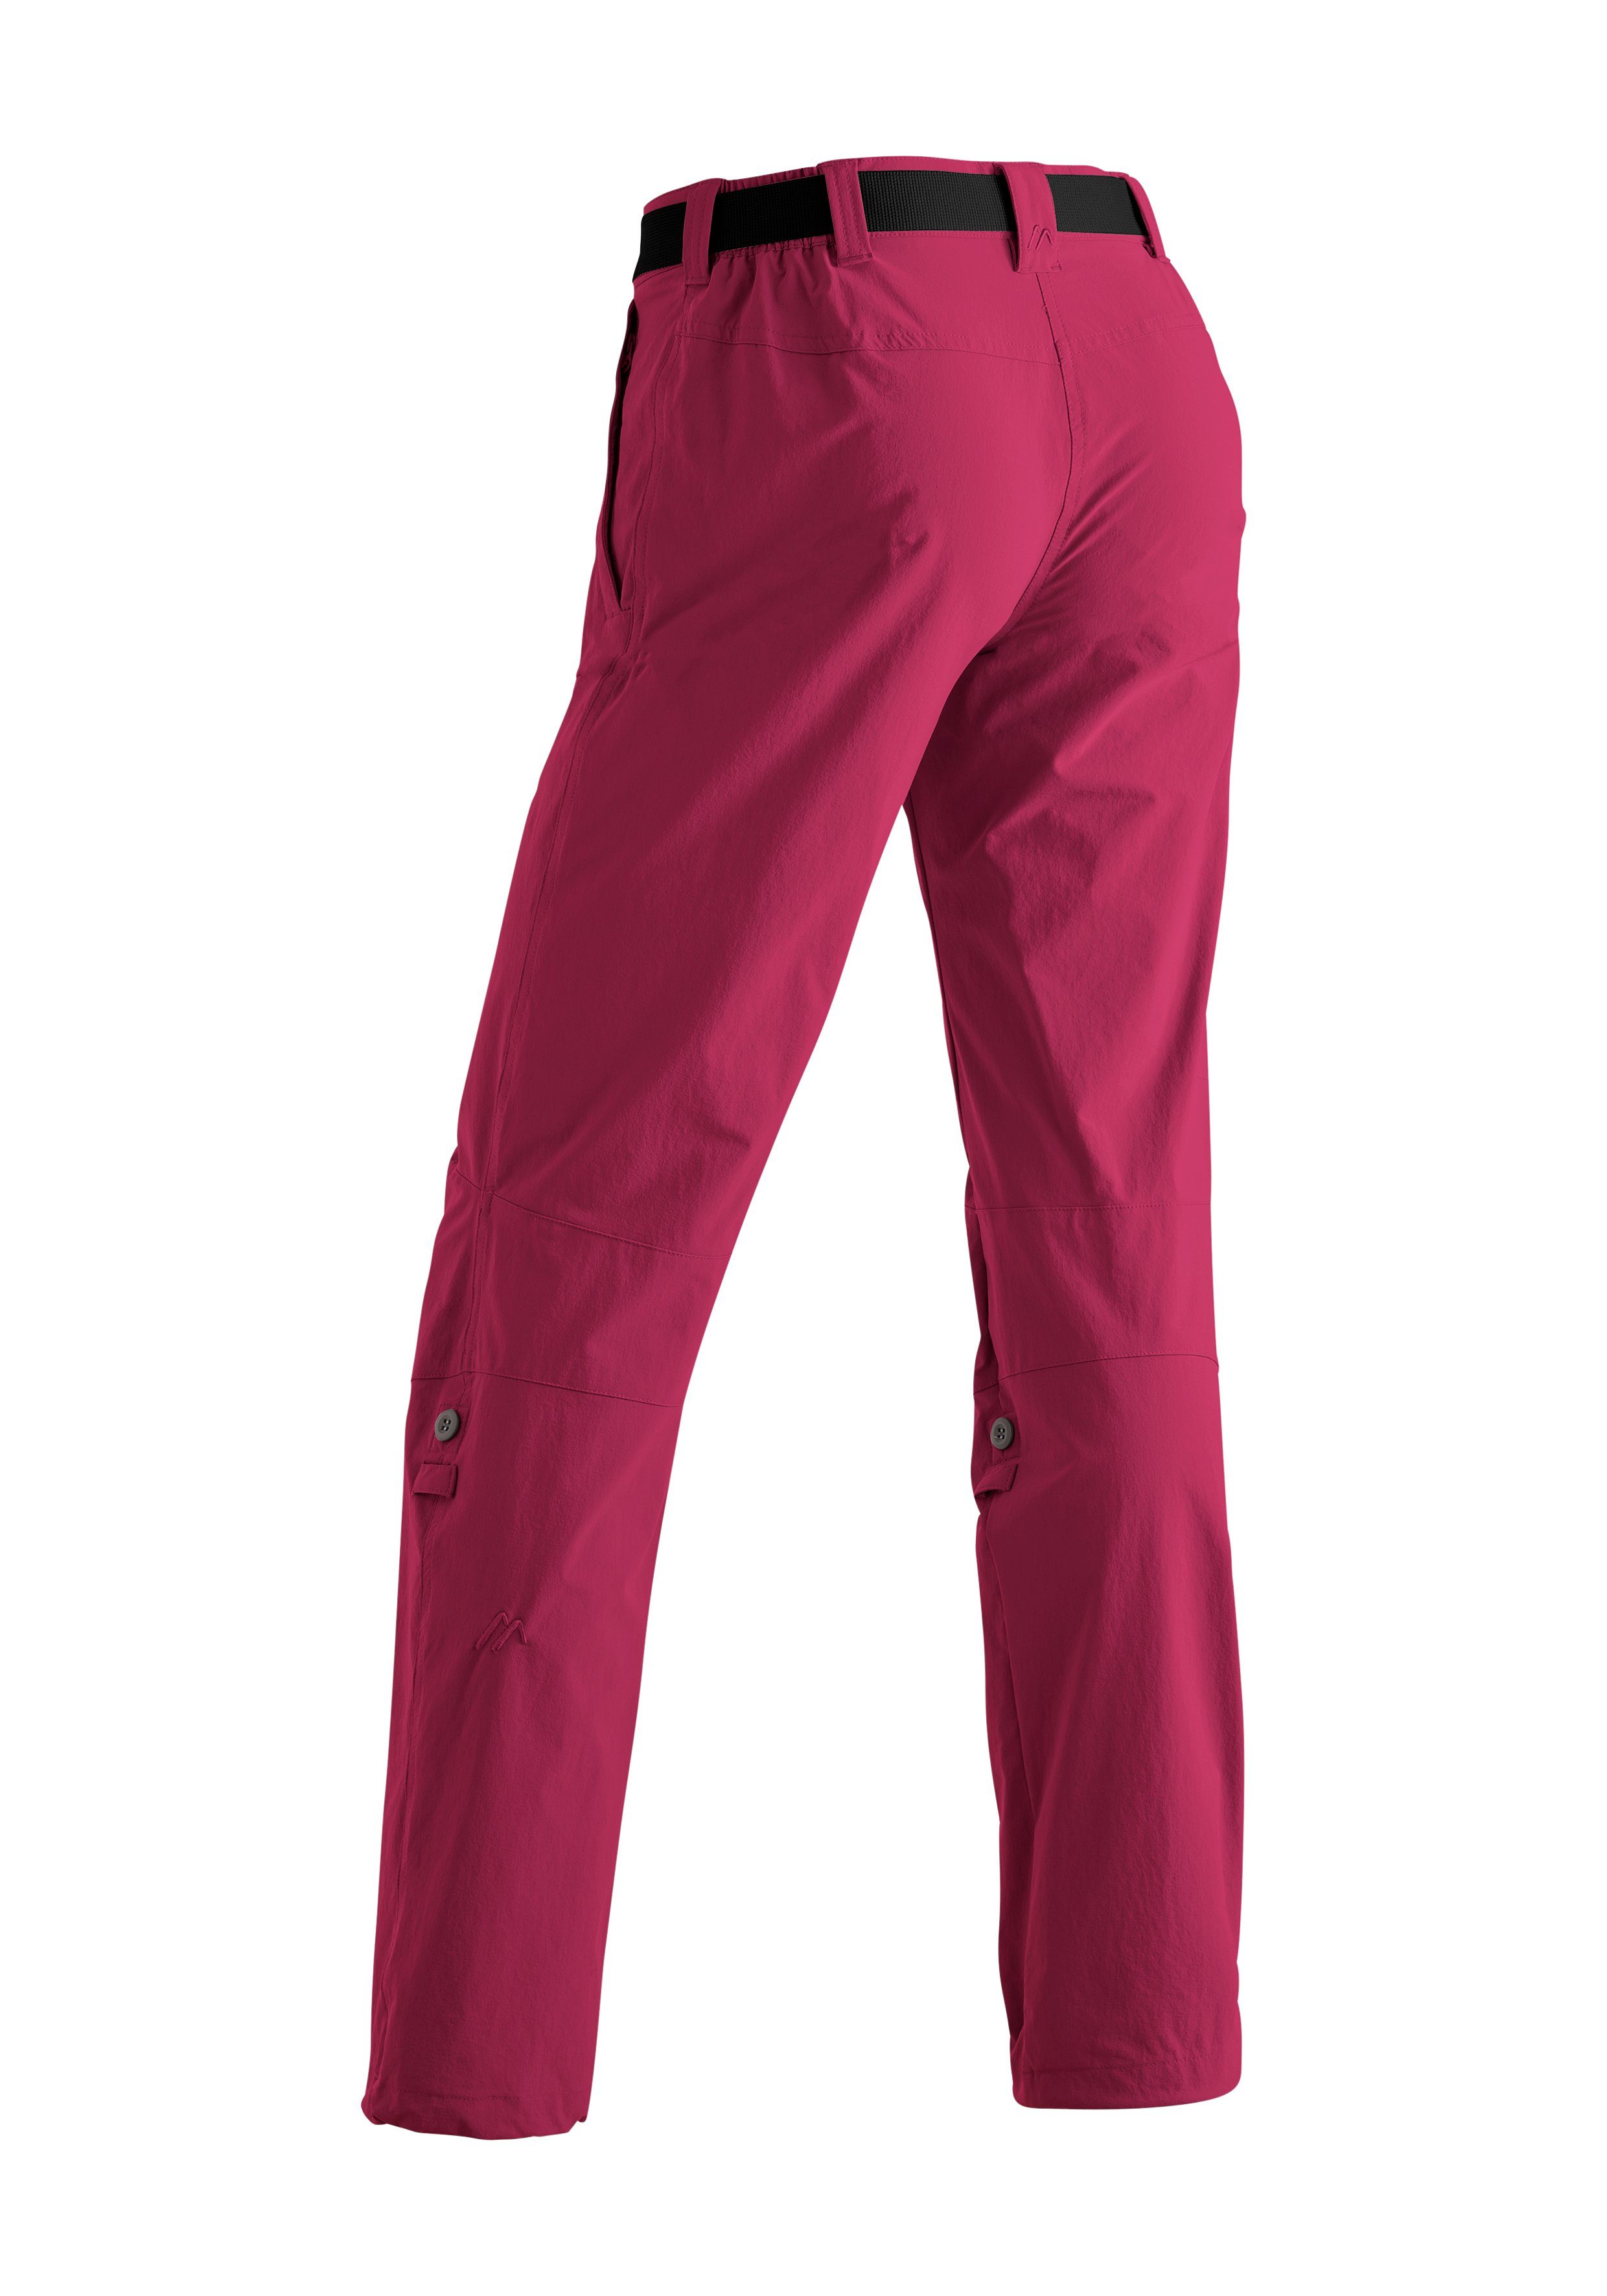 purpurrot Roll up Sports mit Maier Funktion Wanderhose, atmungsaktive Lulaka Damen Outdoor-Hose Funktionshose